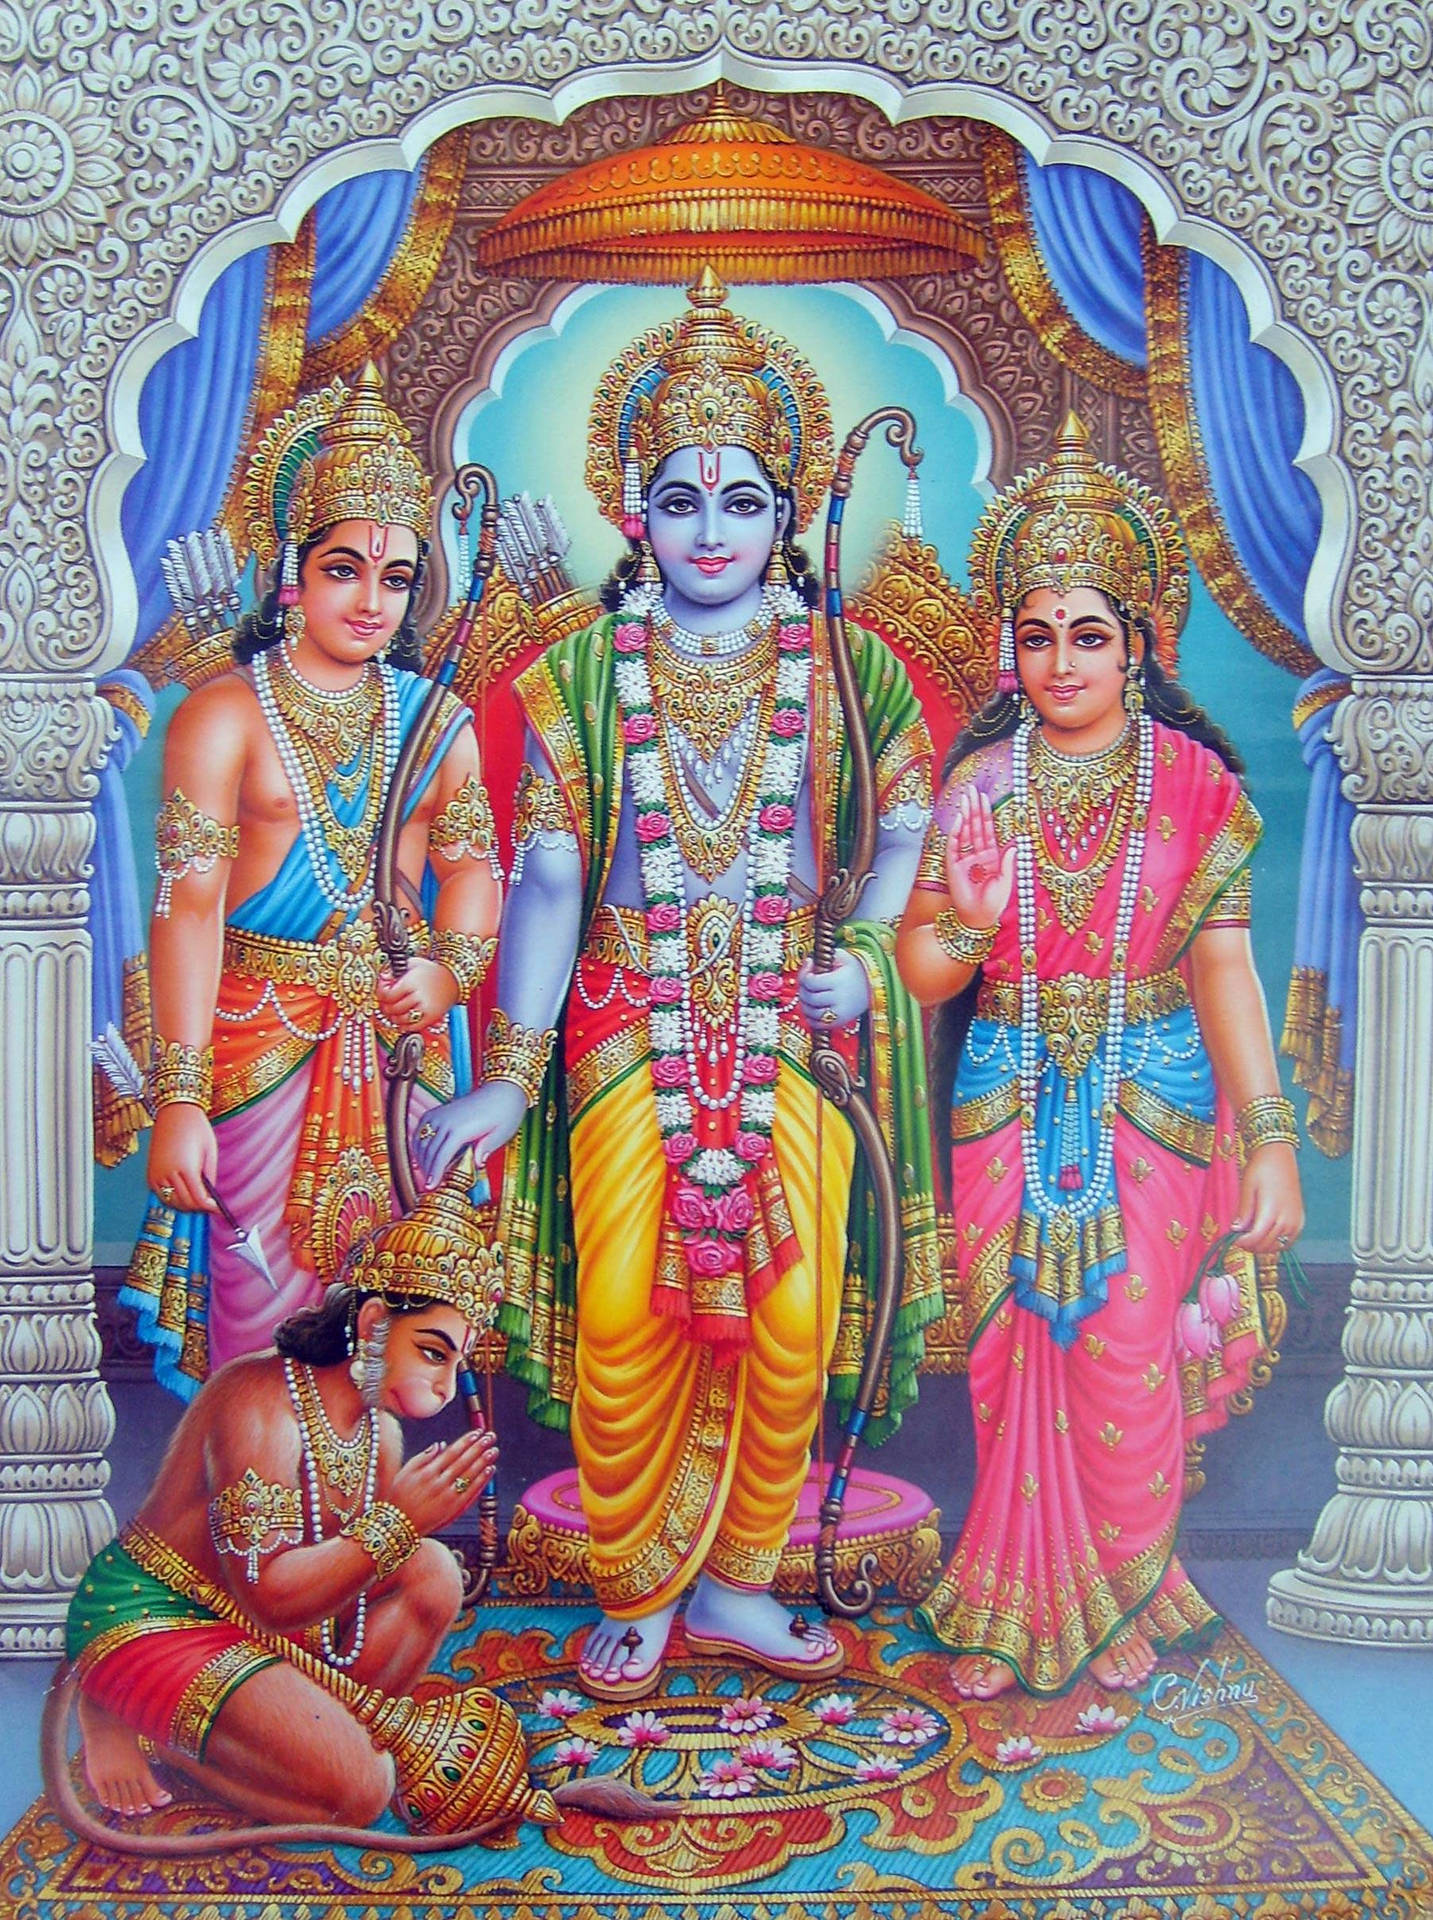 Jai Shri Ram Ramayana Characters Under White Arch